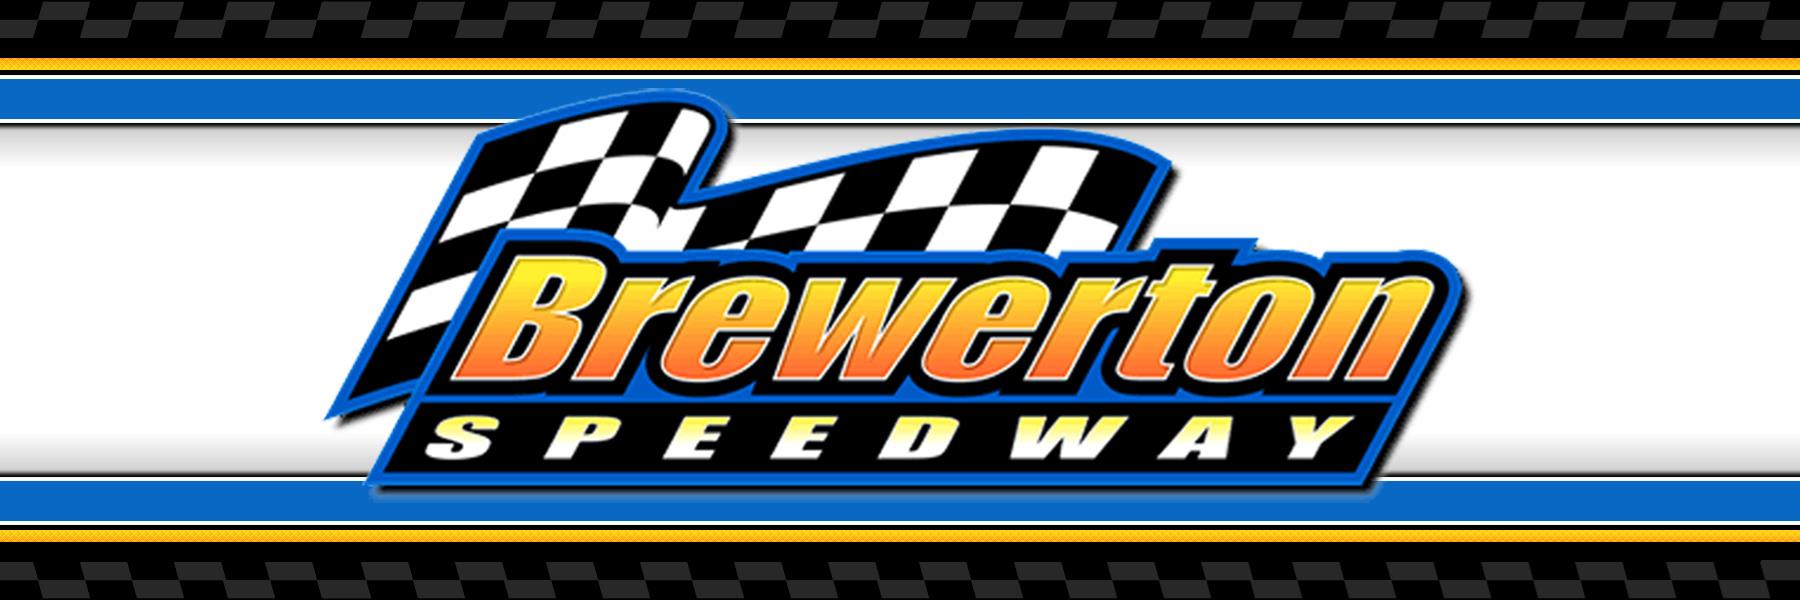 8/26/2022 - Brewerton Speedway